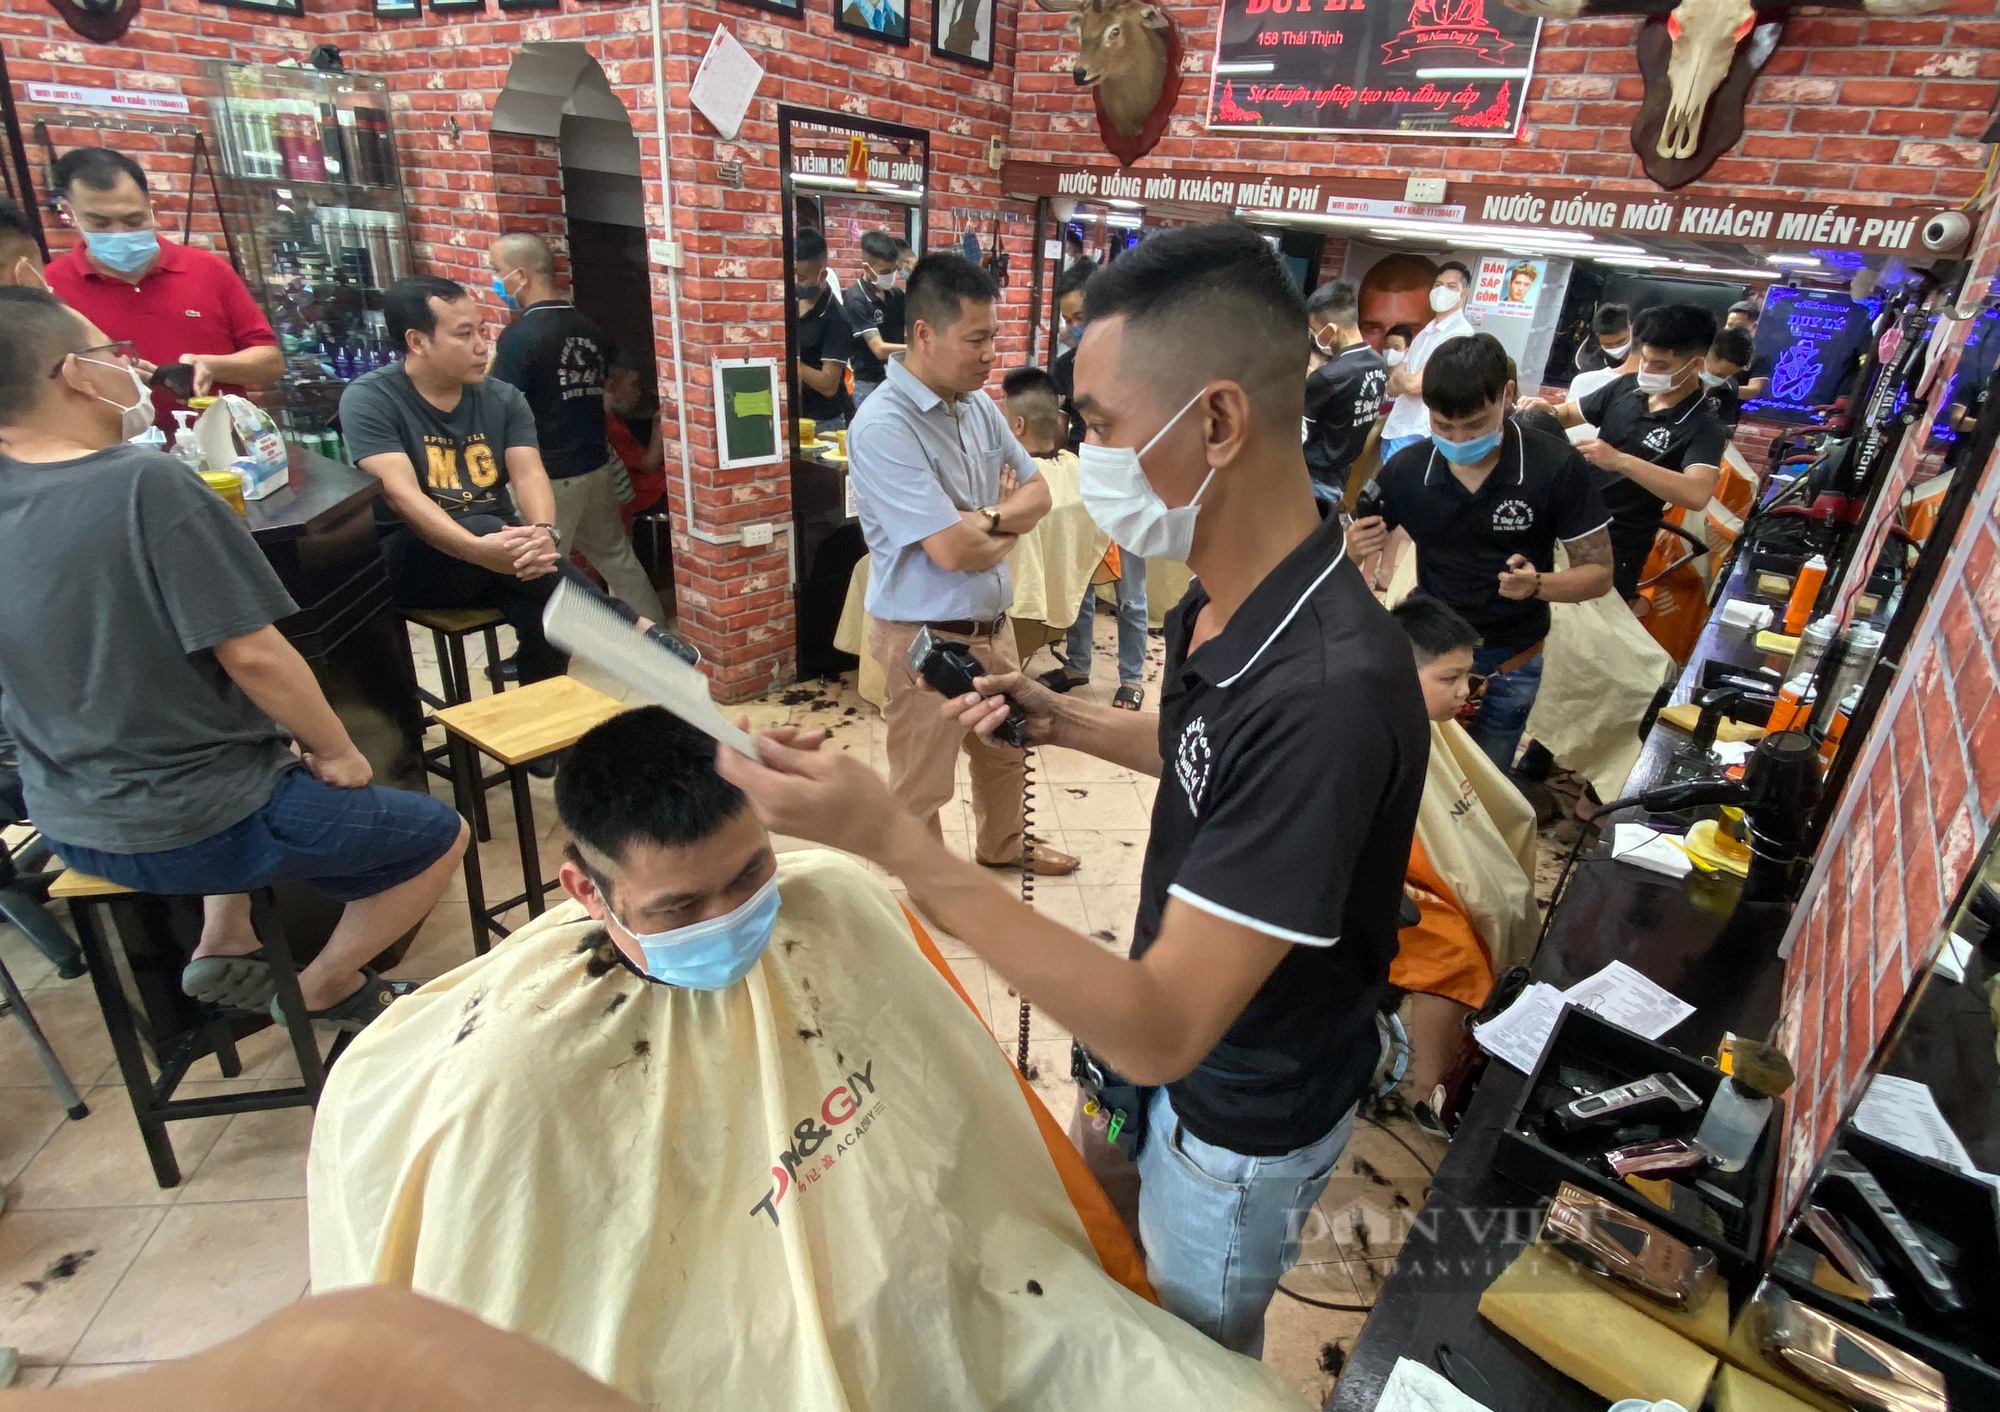 Cả ngày &quot;ngồi chơi xơi nước&quot;, đến chiều quán cắt tóc ở Hà Nội làm không kịp trở tay trước lệnh dừng hoạt động - Ảnh 1.